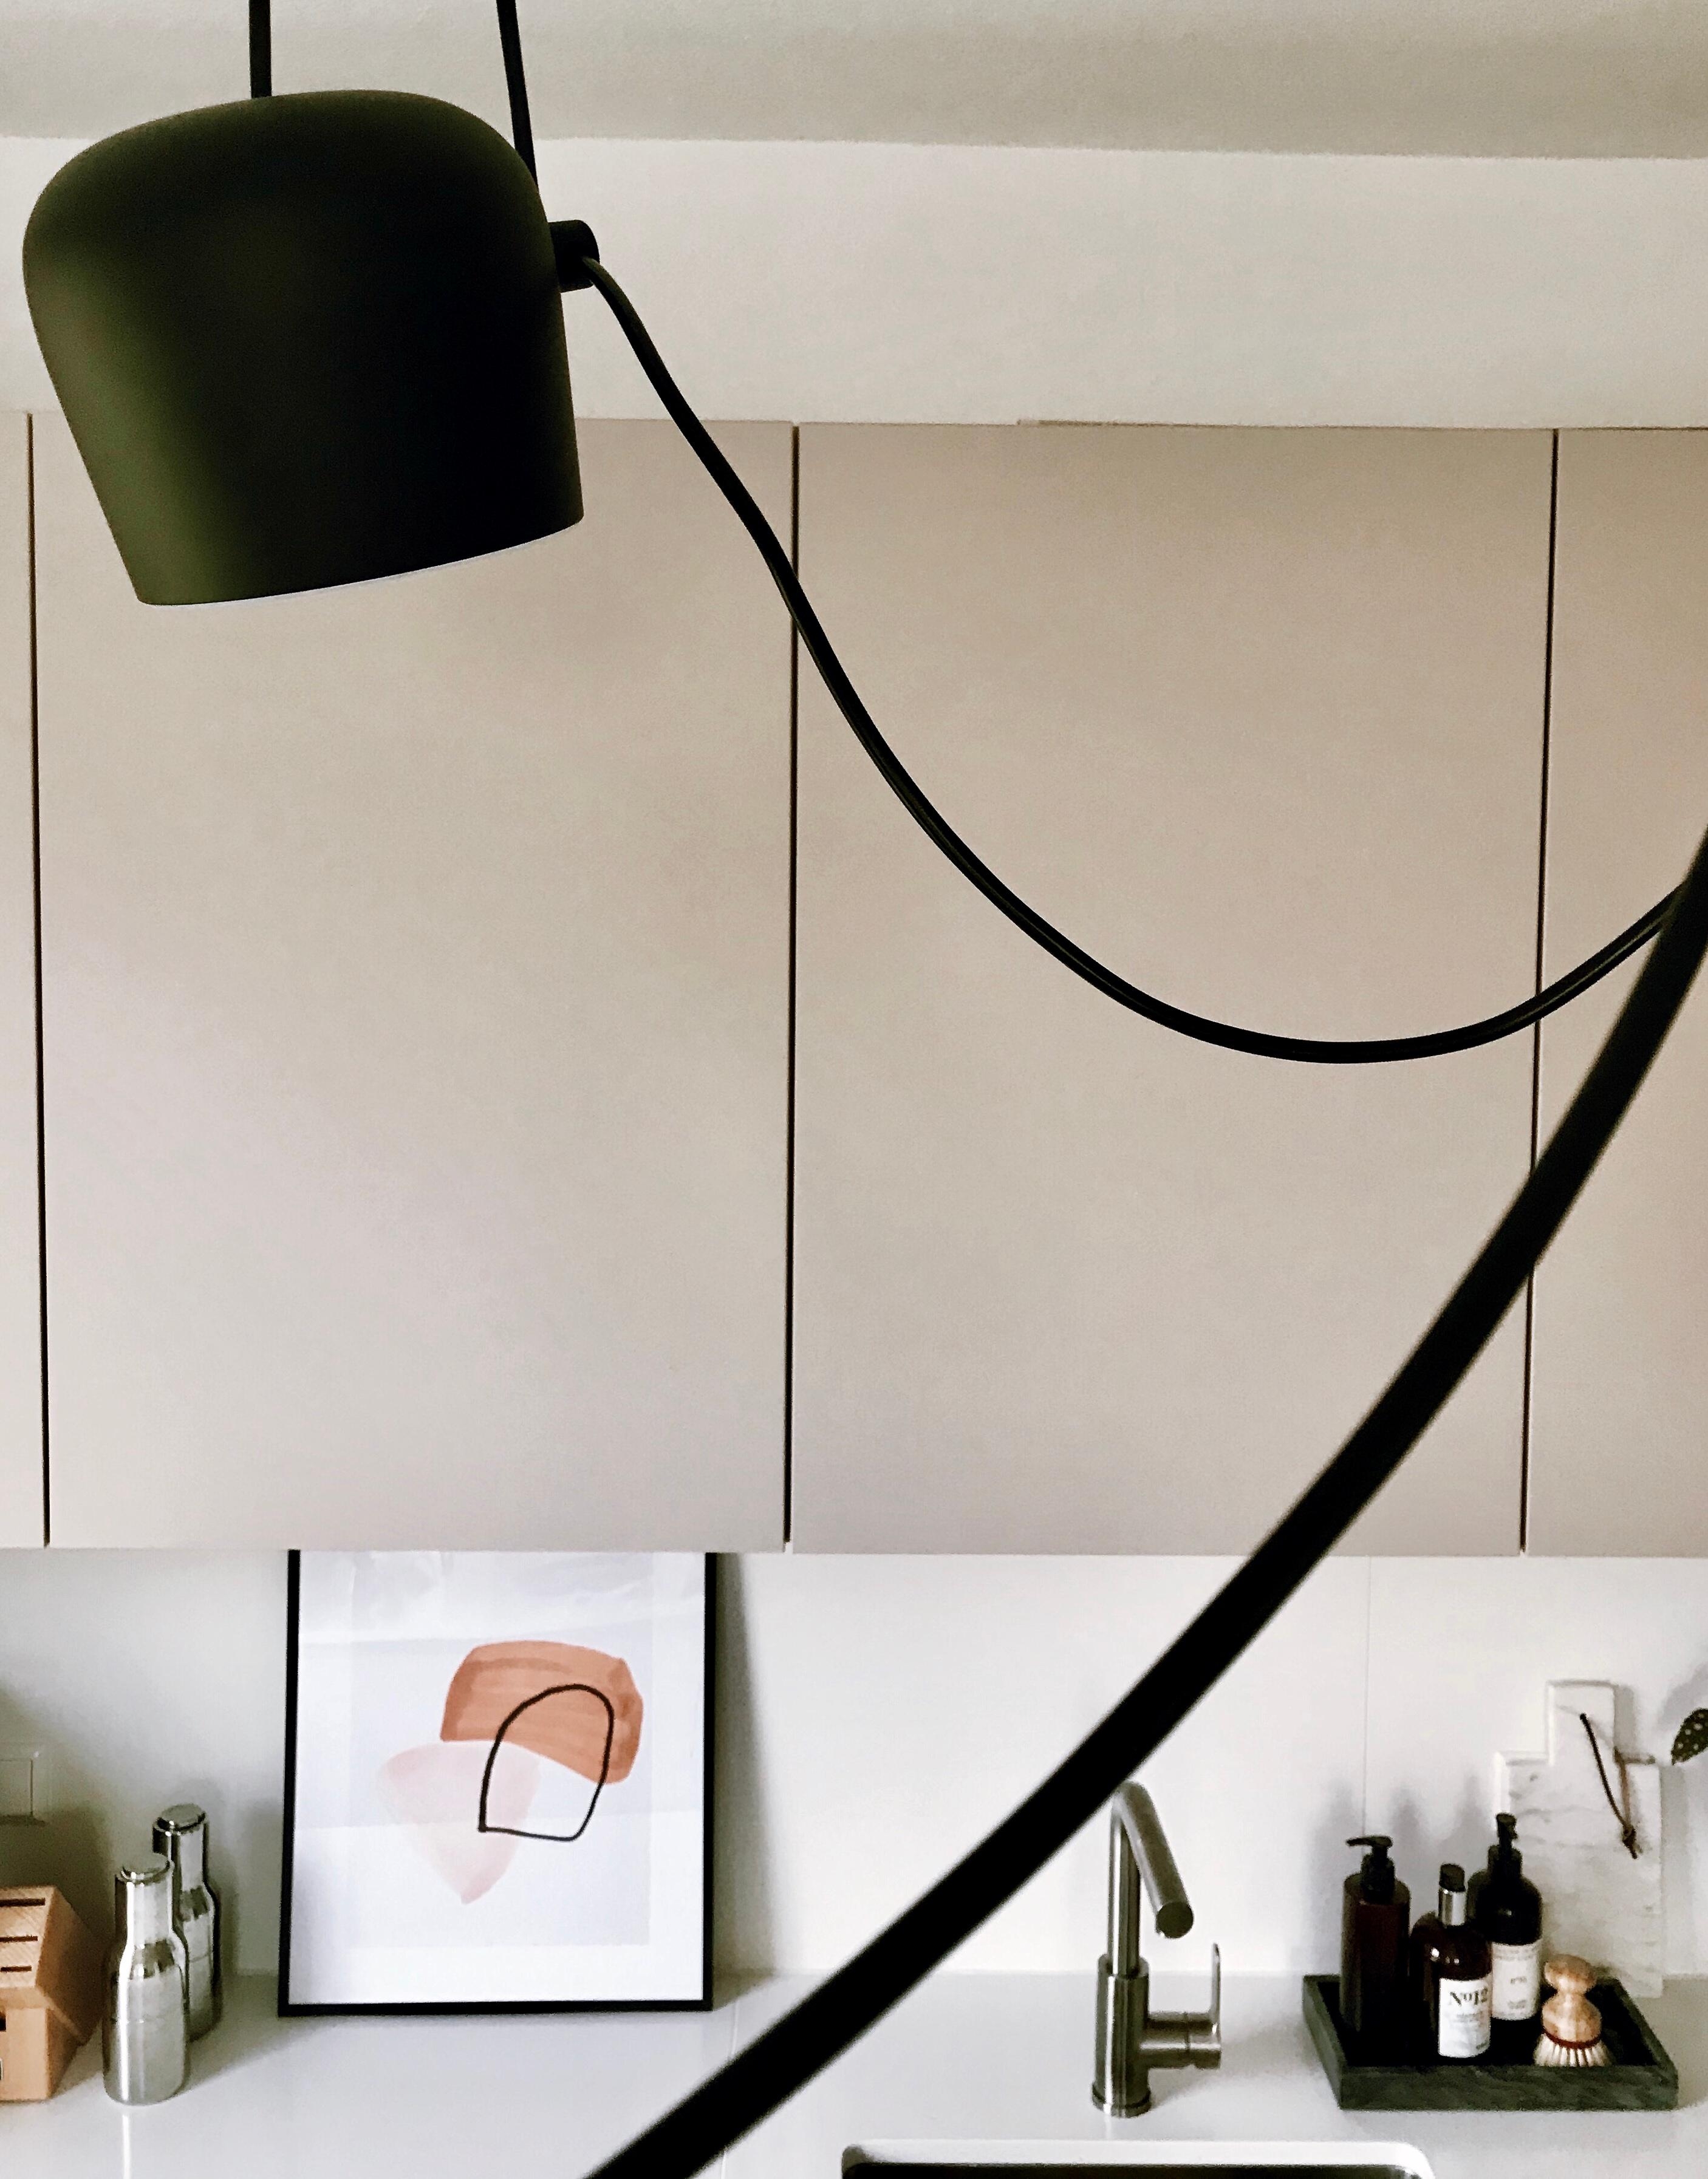 Hallo Küche. 🖤
#interior #küche #kücheninspo #lampe #flos #print #details